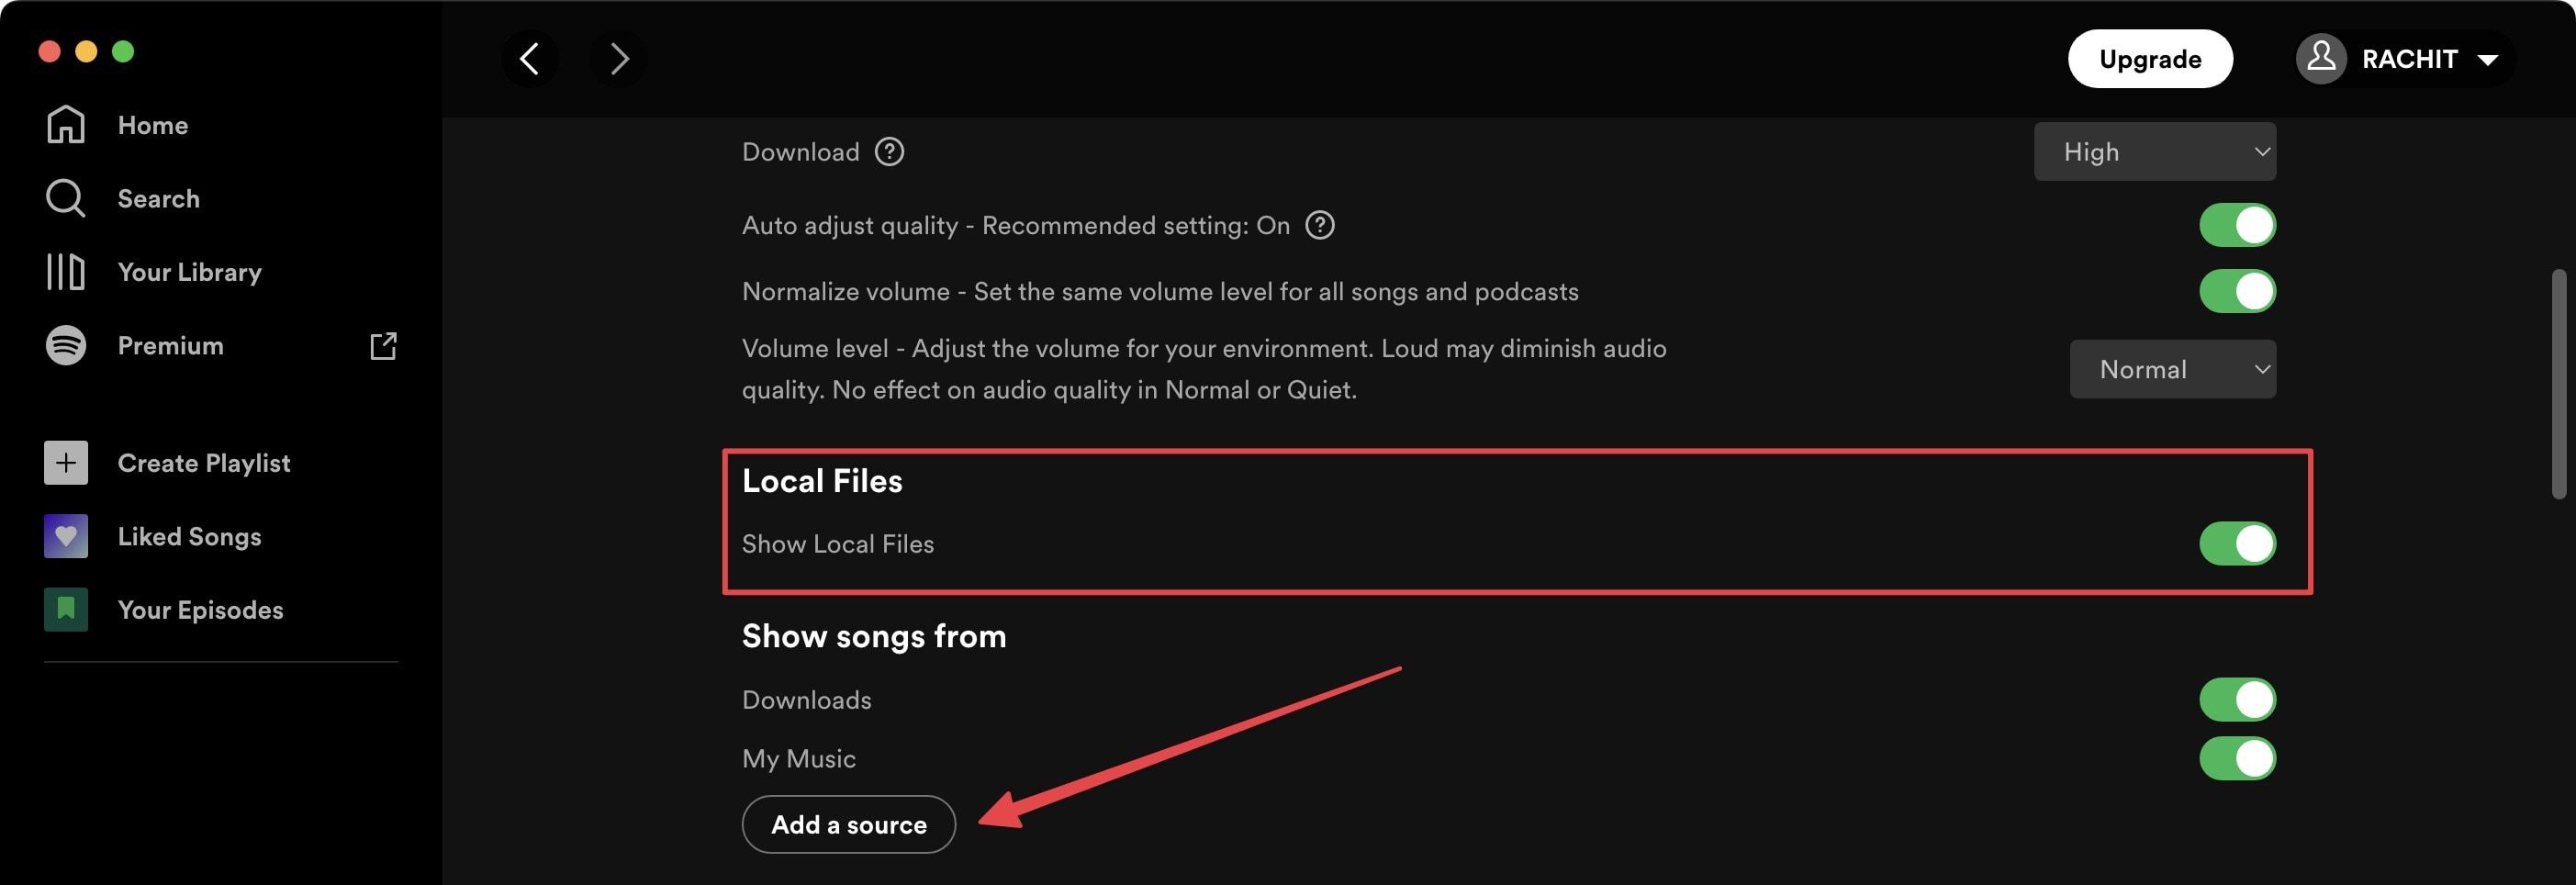 Mainkan file lokal di Spotify